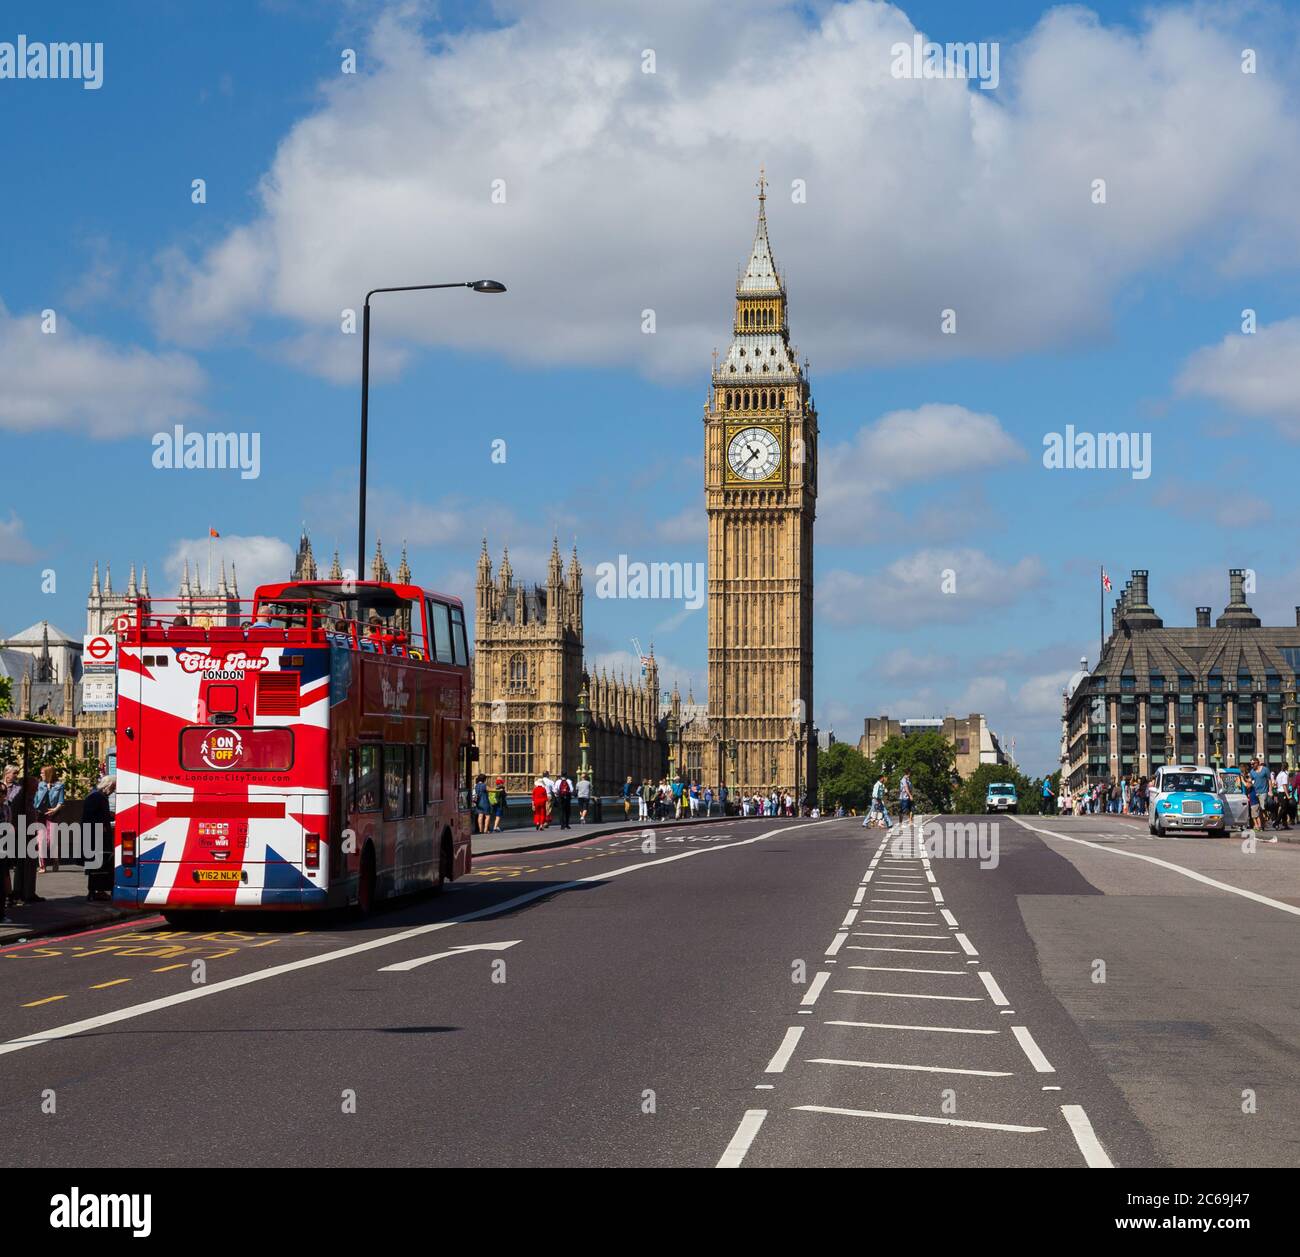 LONDRES, Royaume-Uni - 21 JUILLET 2015 : la Tour Elizabeth et le pont Westminster pendant la journée. Un bus et de grandes quantités de personnes peuvent être vus. Banque D'Images